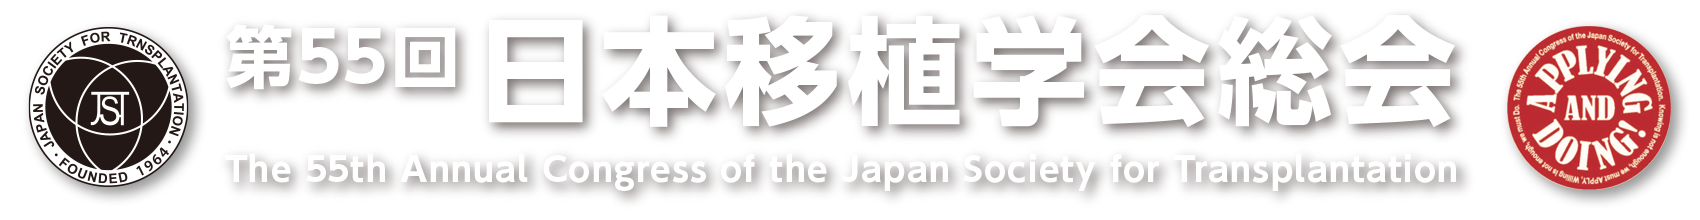 第55回日本移植学会総会 -The 55th Annual Congress of the Japan Society for Transplantation-